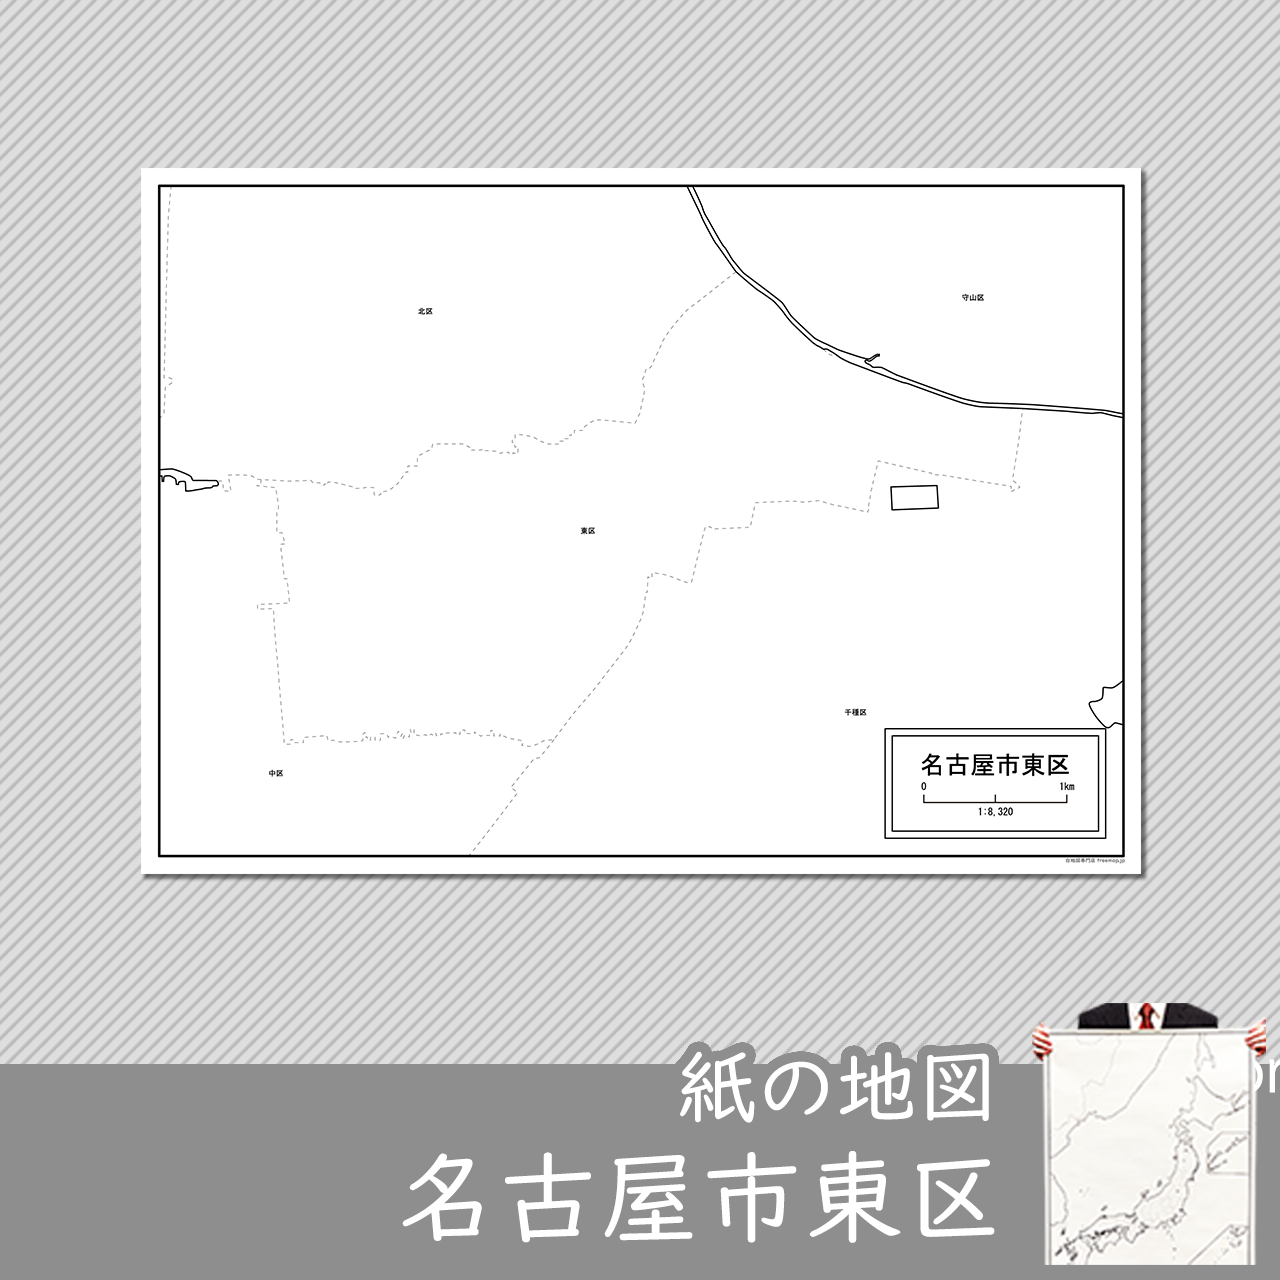 名古屋市東区の紙の白地図のサムネイル